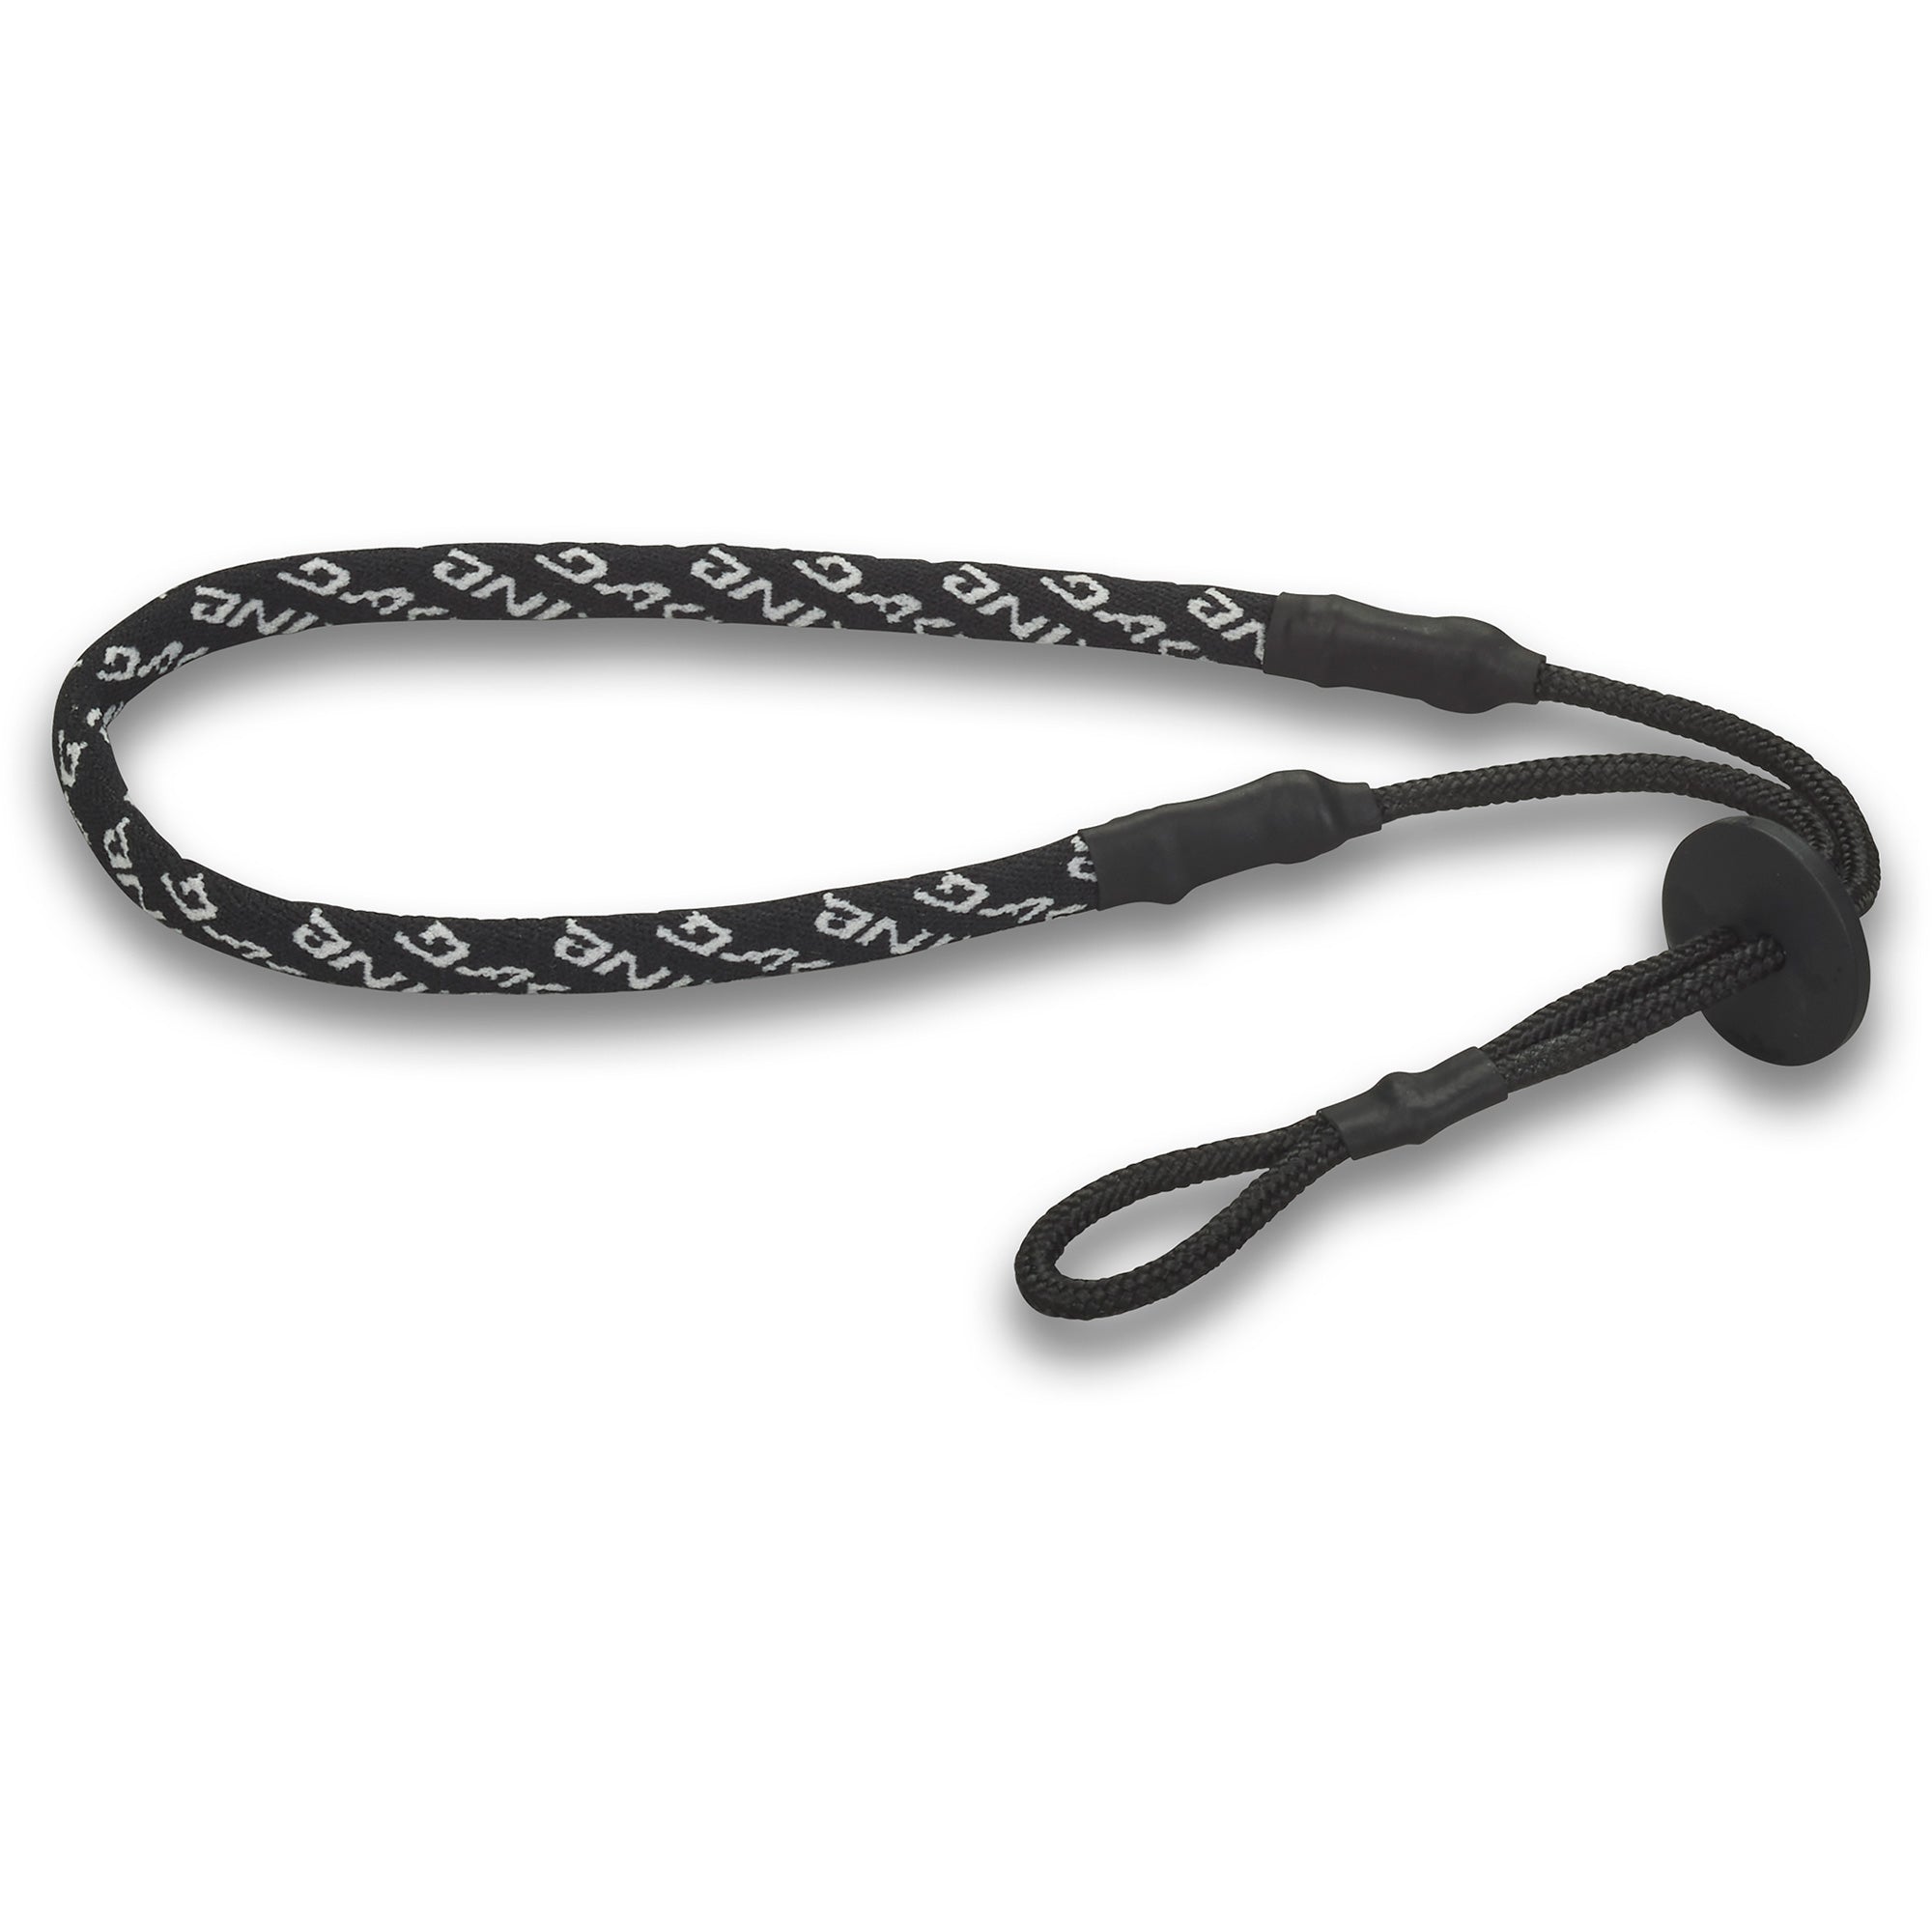 Dakine Premium Hook-and-loop Ski Strap Tie